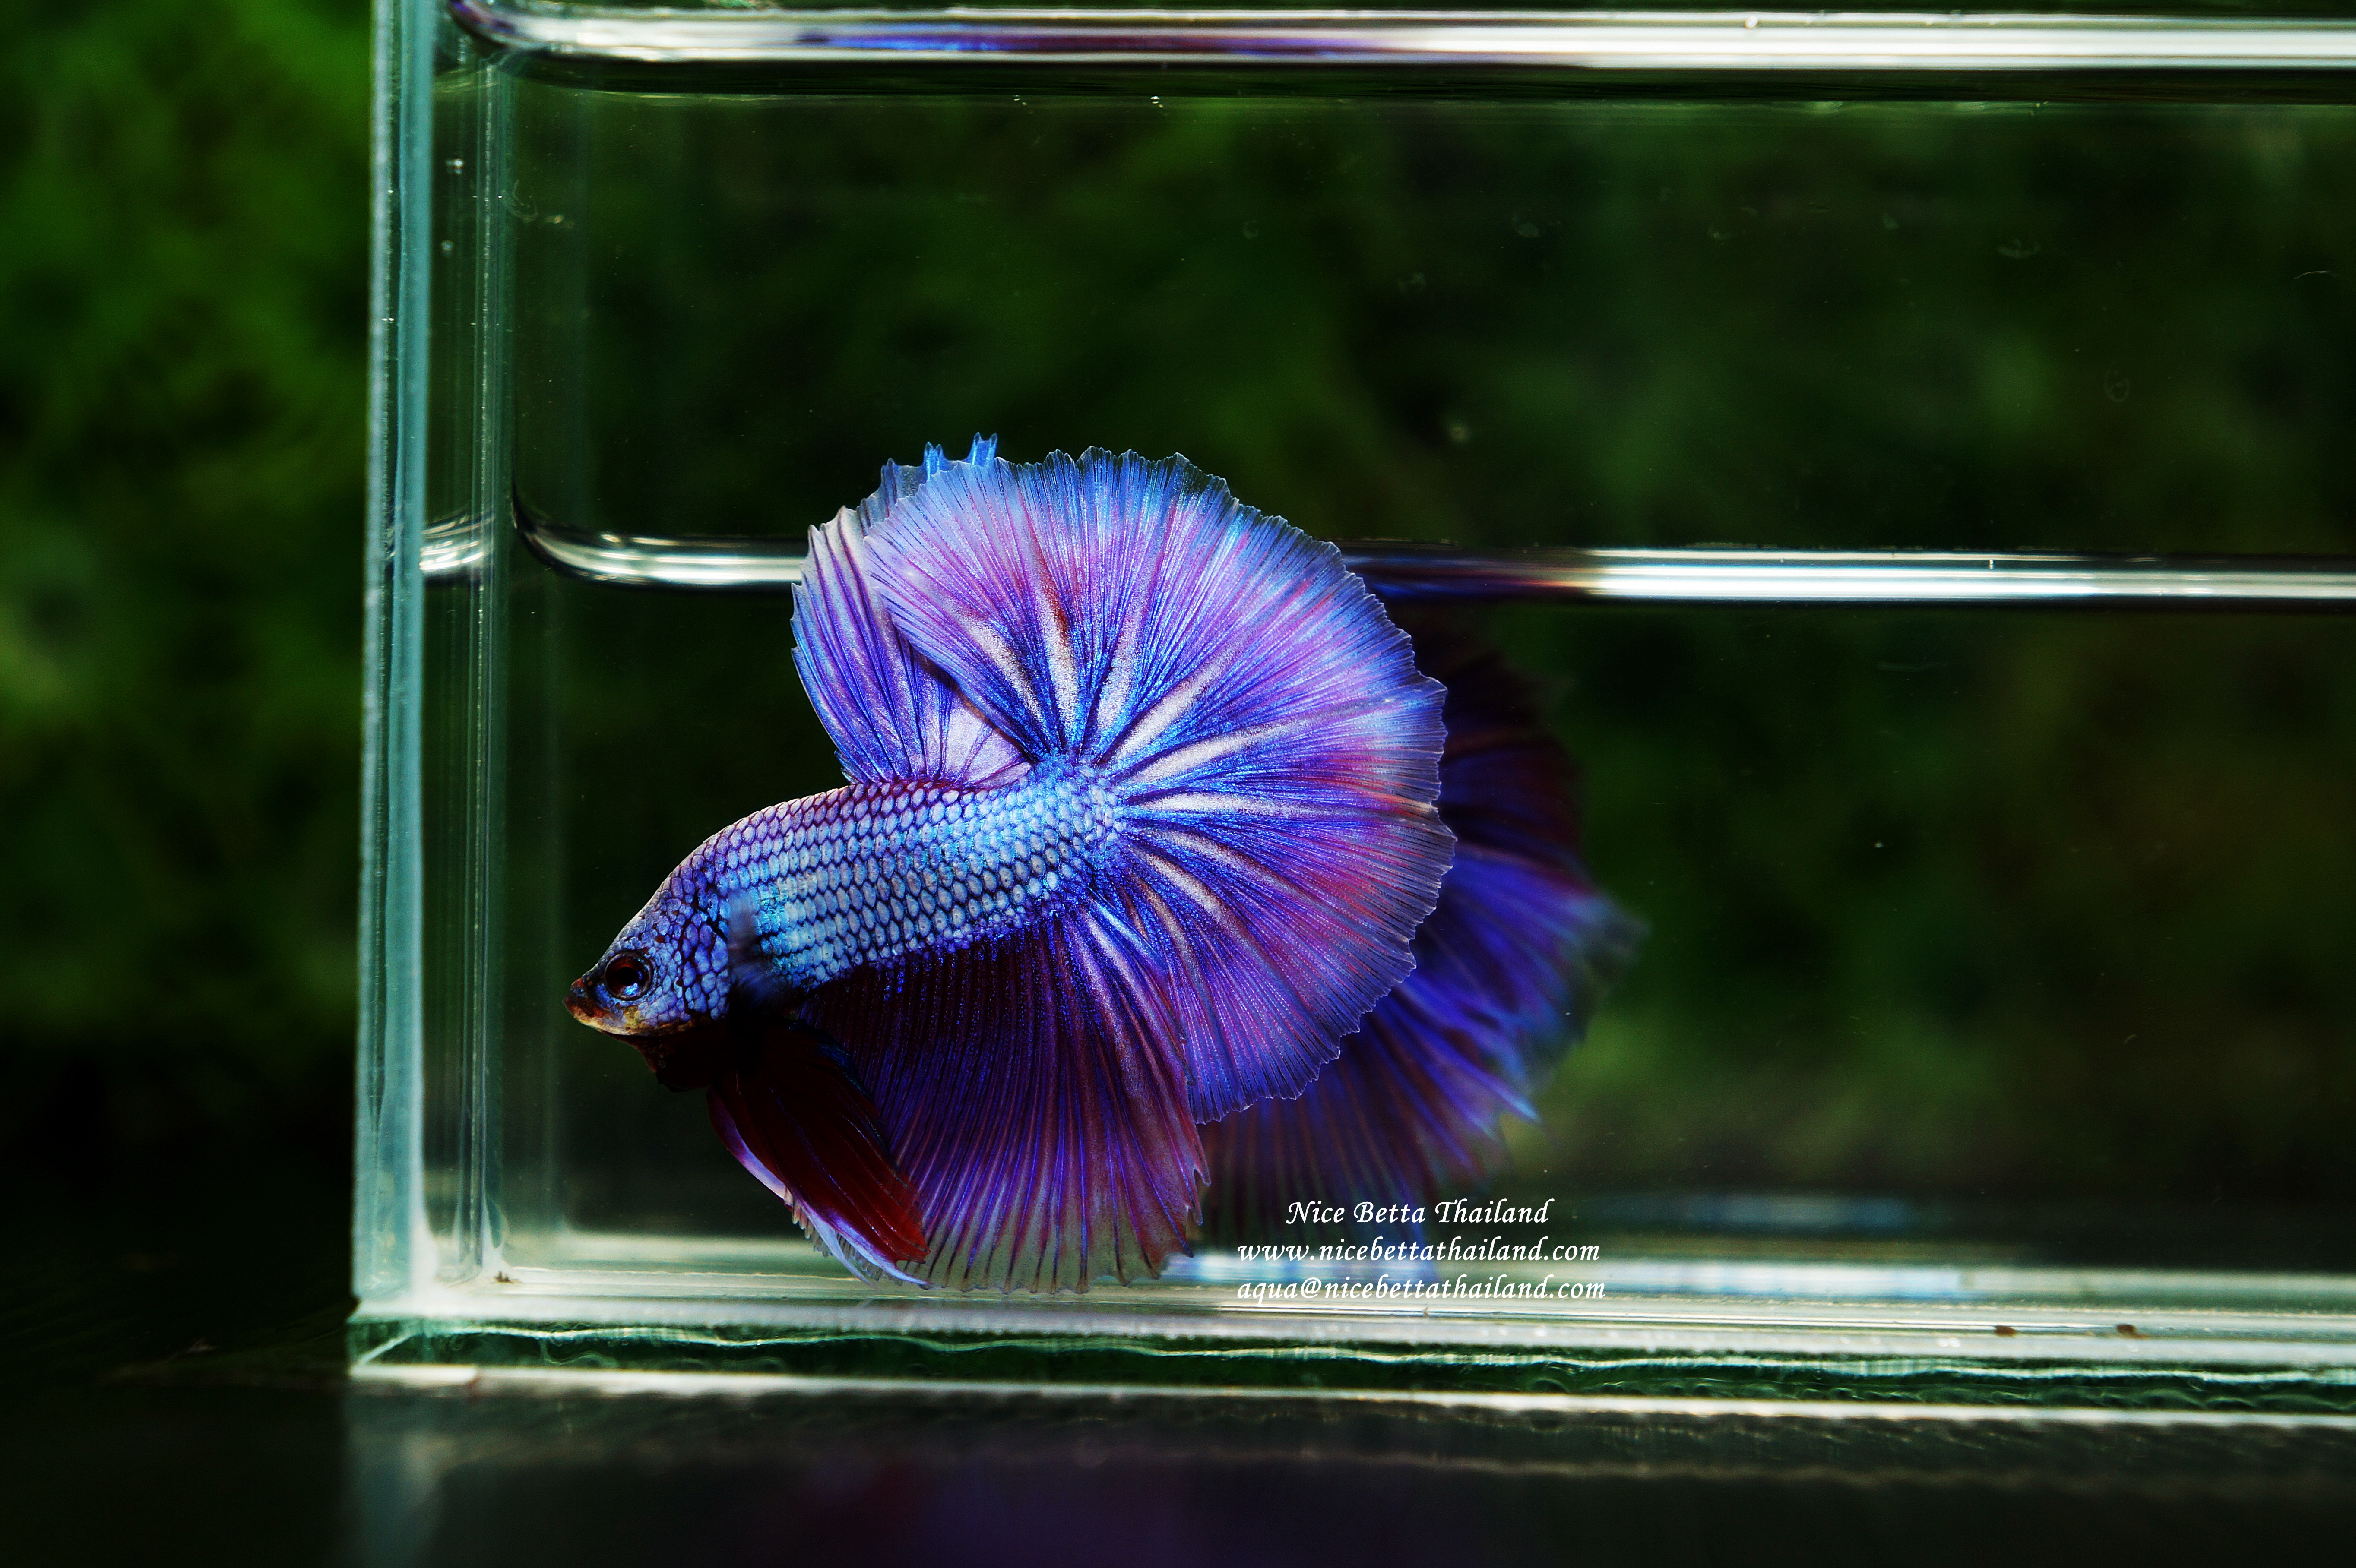 The Elusive Purple Betta Fish Nice Betta Thailand Co Ltd.